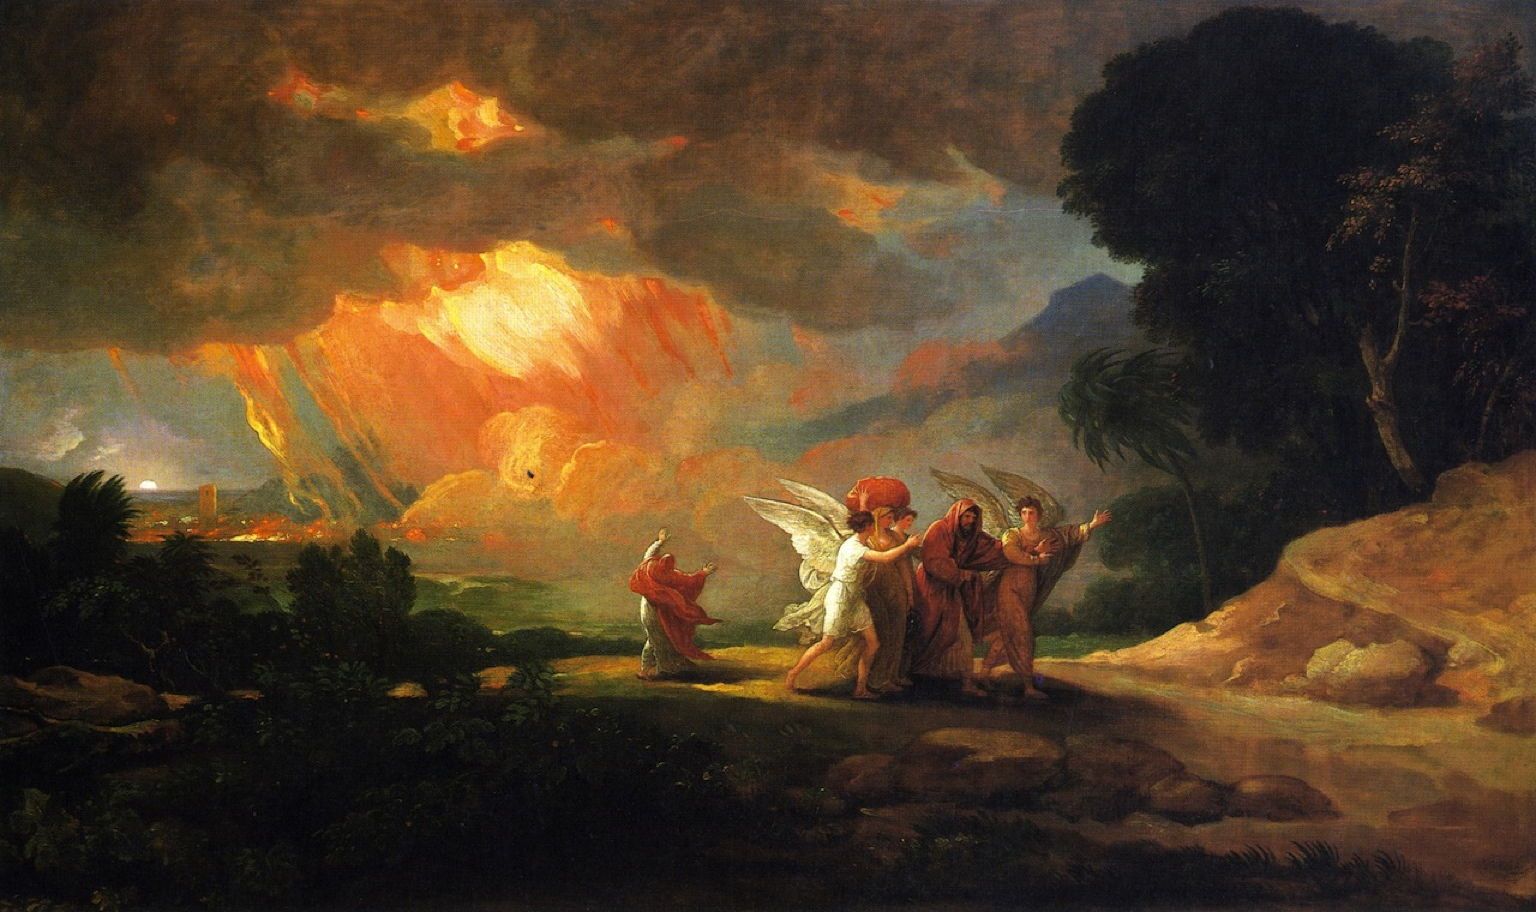 Lot Fleeing Sodom